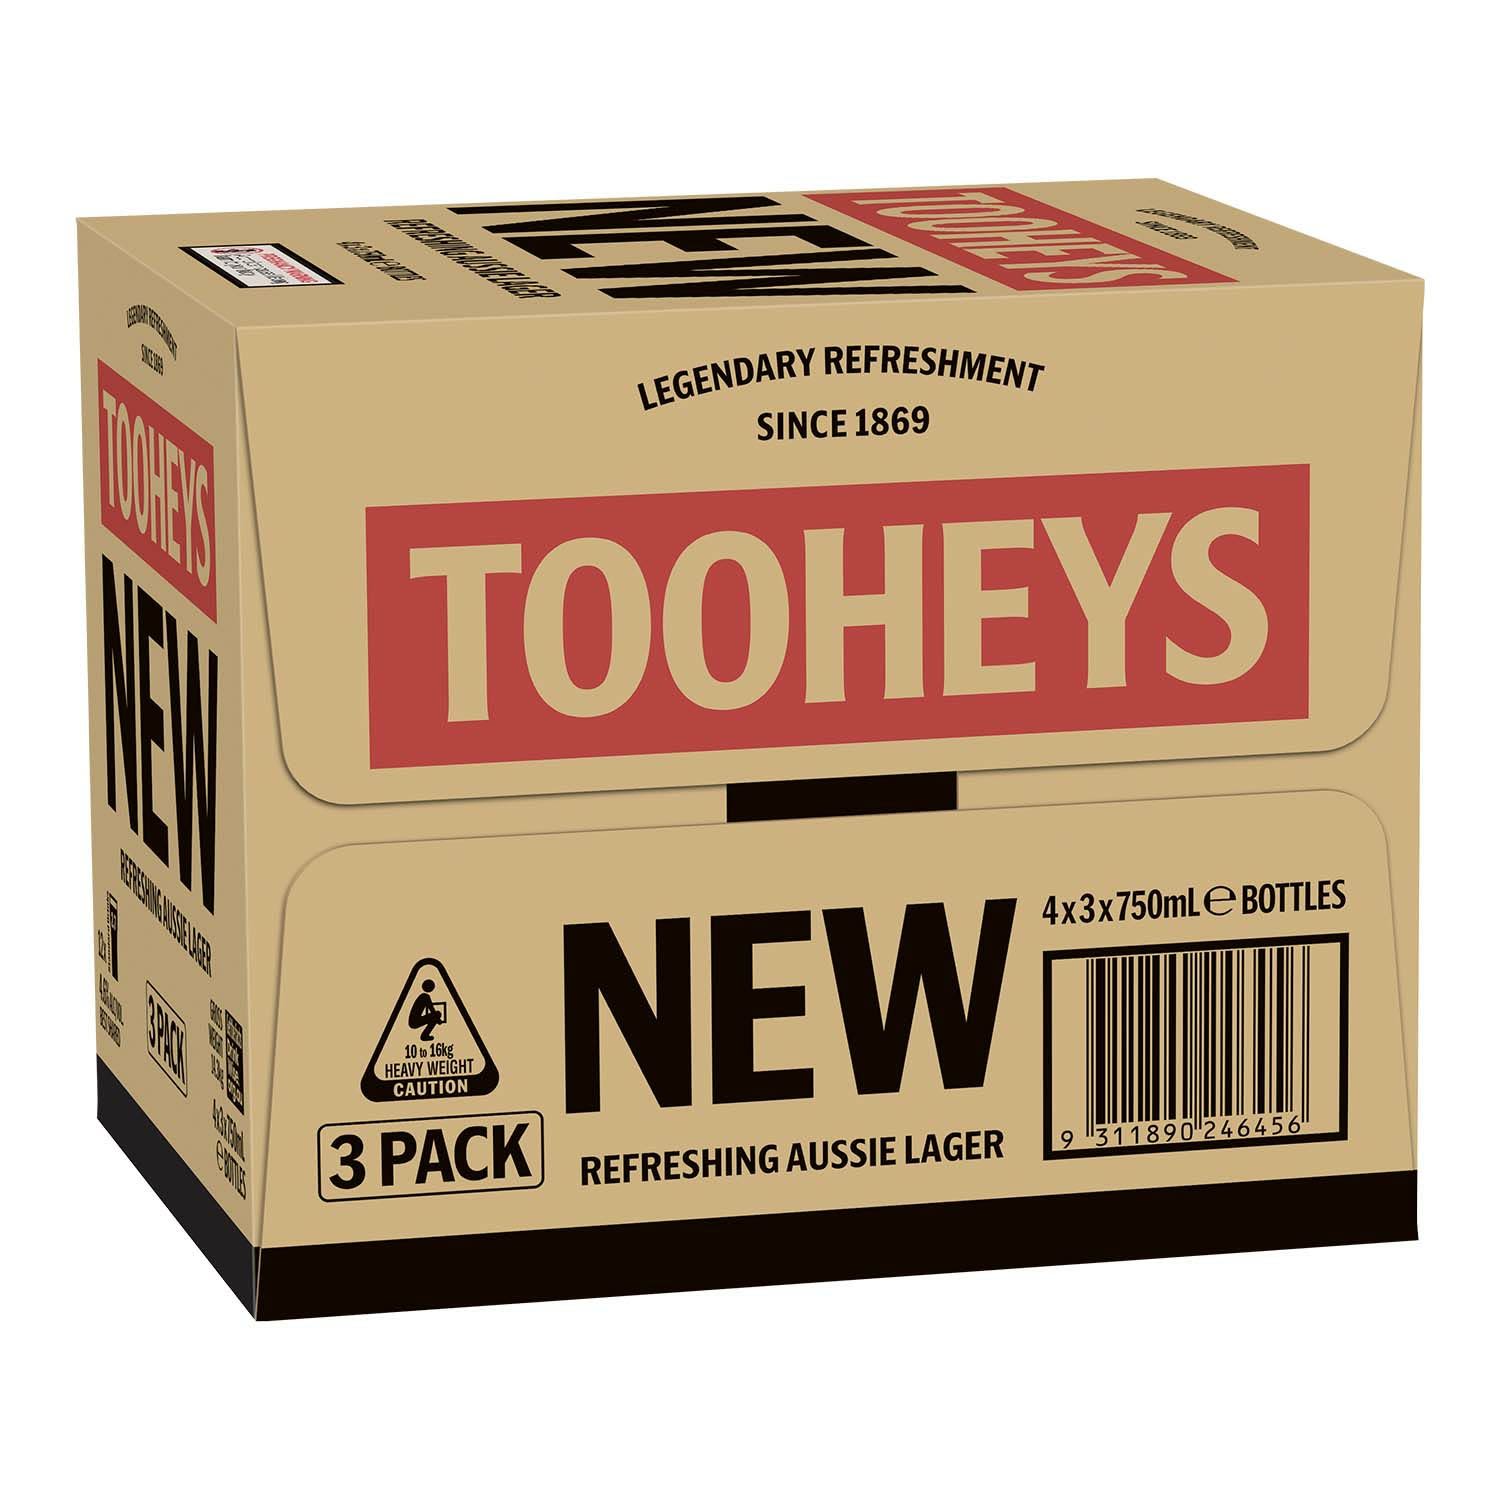 Tooheys New Bottle 750mL (4 x 3 Pack)